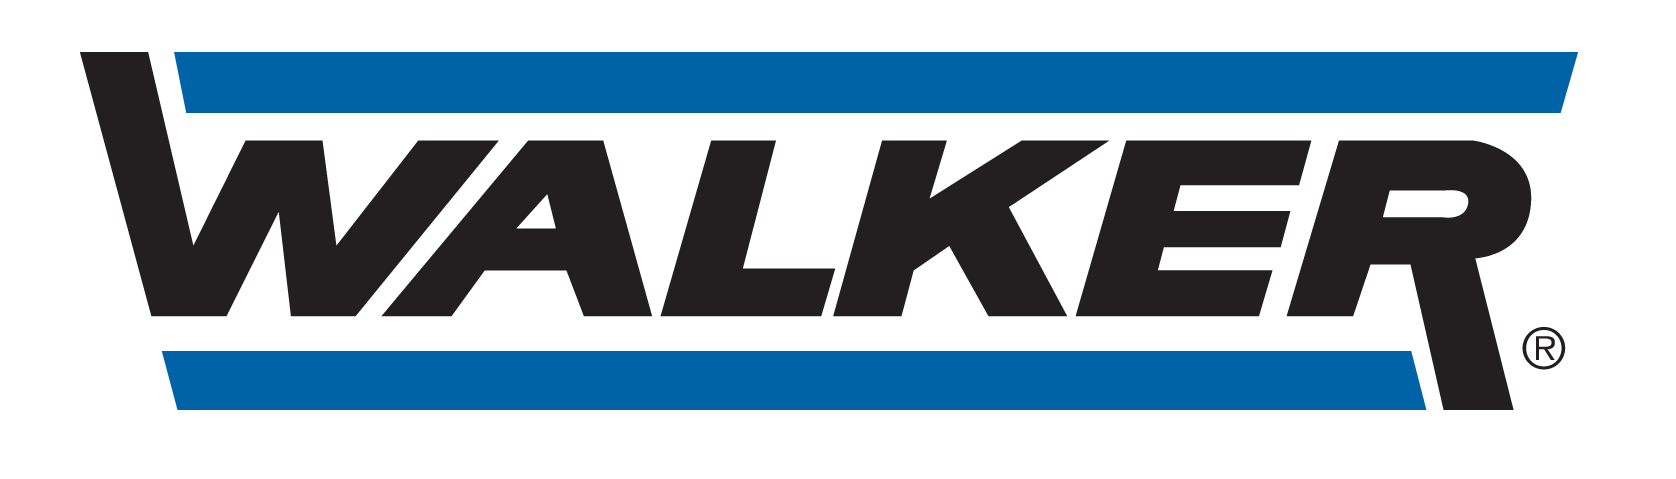 HD AUTO MOBILE - logo Walker